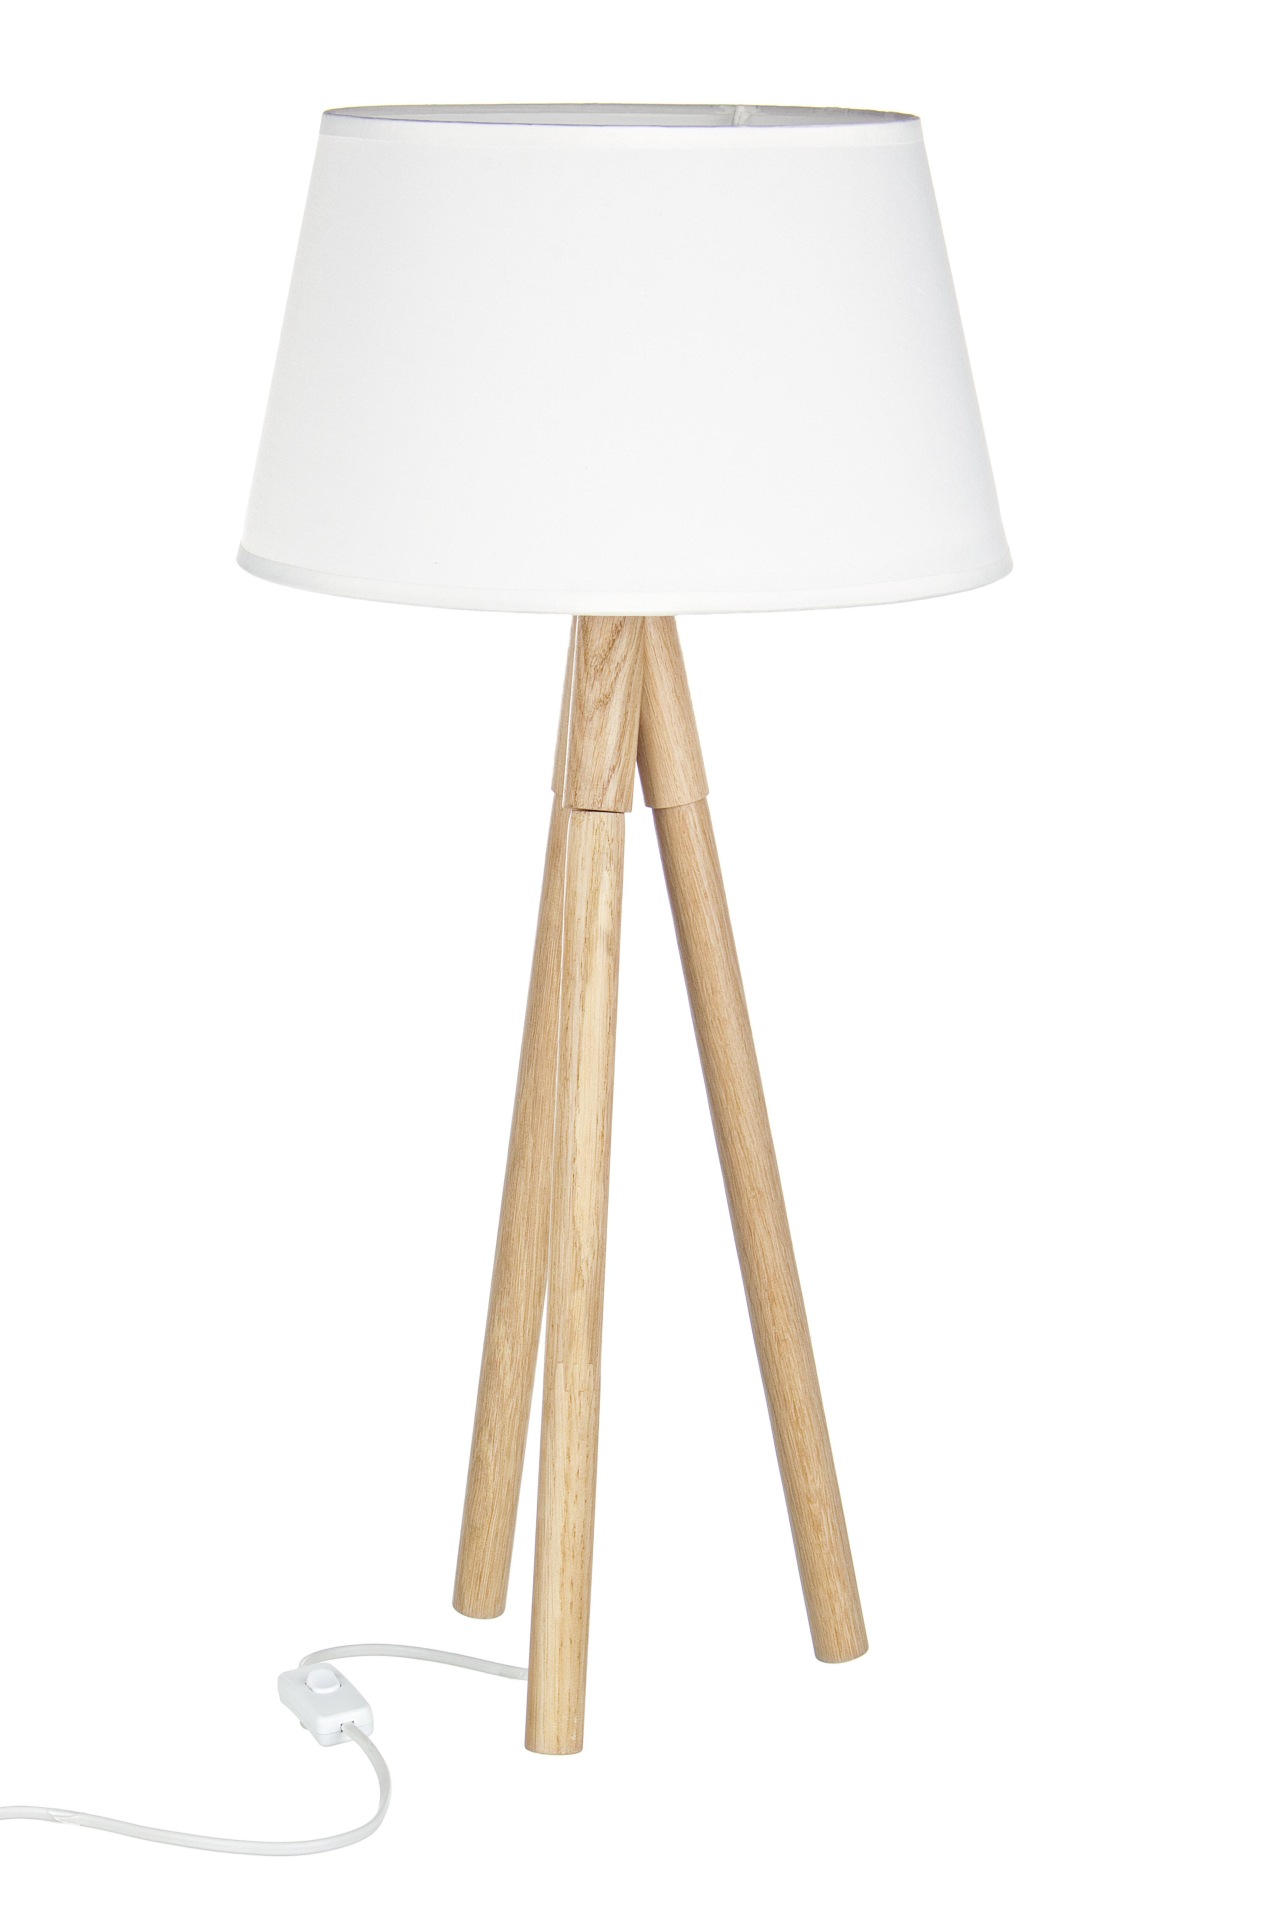 Die Tischleuchte Wallas überzeugt mit ihrem klassischen Design. Gefertigt wurde sie aus Tannenholz, welches einen natürlichen Farbton besitzt. Der Lampenschirm ist aus Terital und hat eine weiße Farbe. Die Lampe besitzt eine Höhe von 69 cm.